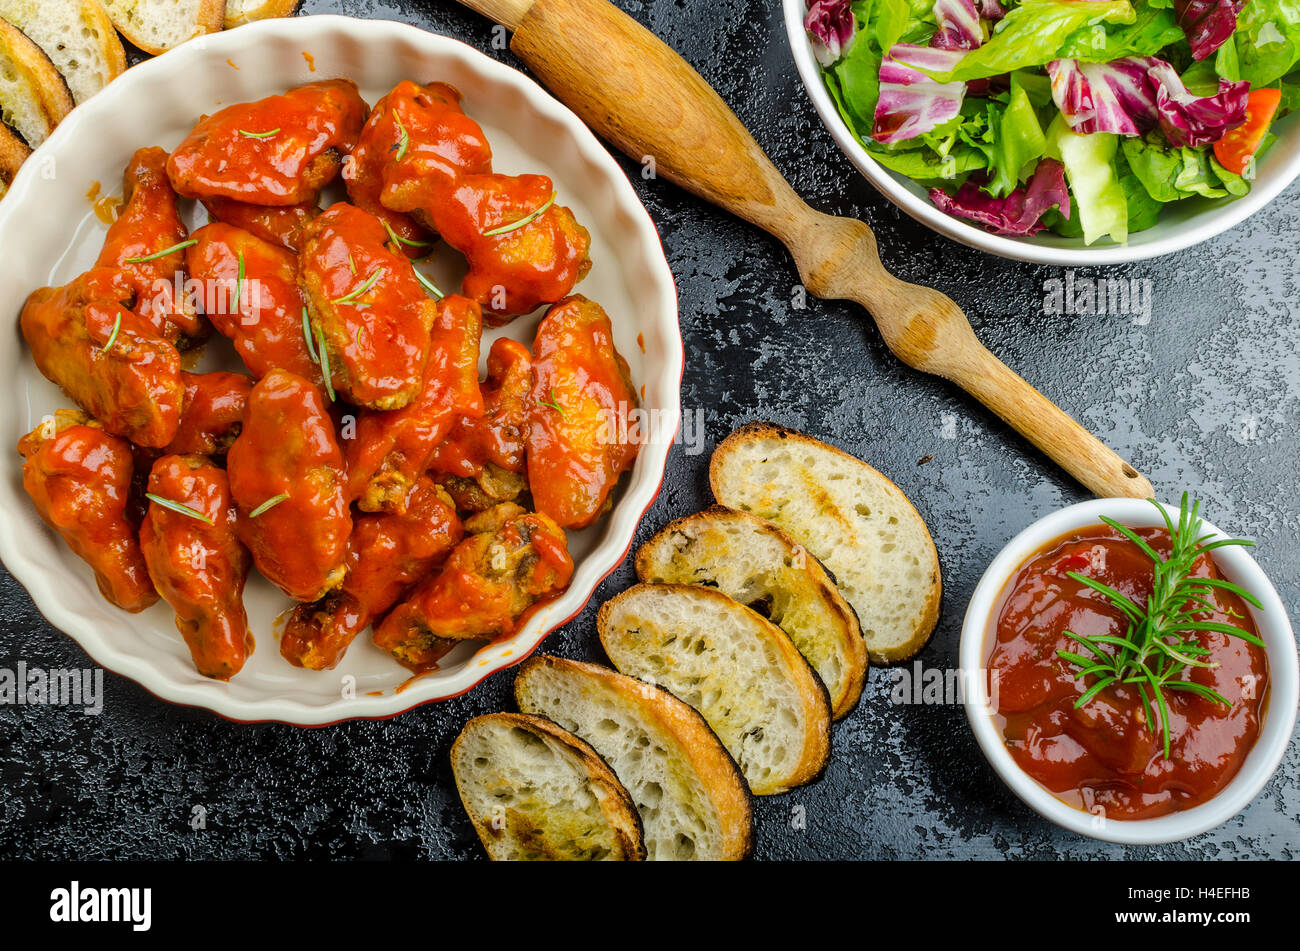 Petites ailes de poulet avec sauce à habanero épicé et salade mélangée avec des tomates cerises, baguette grillée avec de l'huile d'olive Banque D'Images